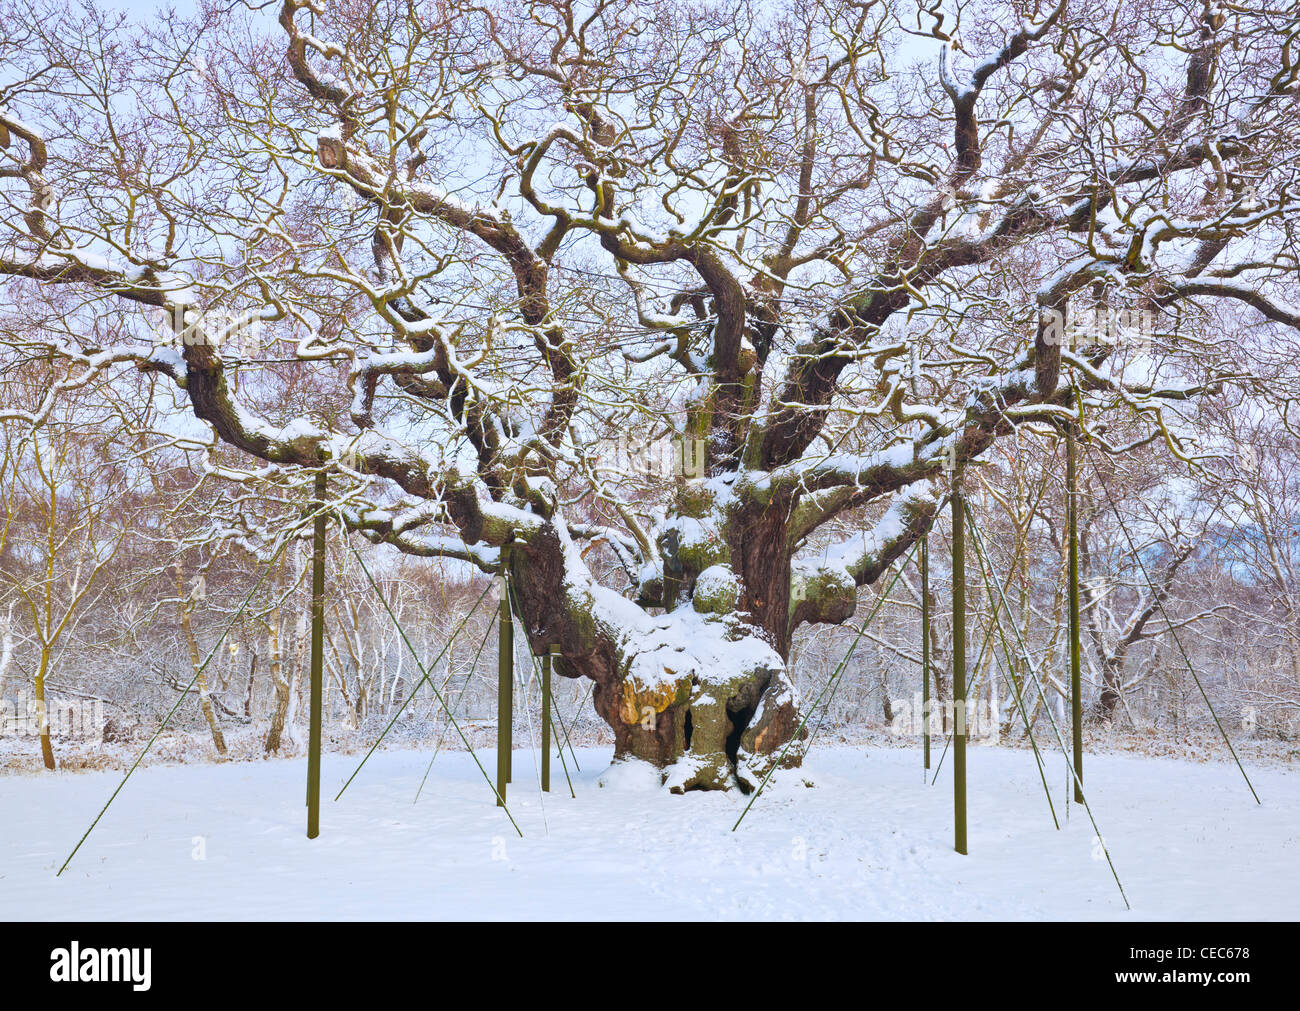 Il grande albero di quercia nella neve fresca foresta di Sherwood country park edwinstowe nottinghamshire England Regno unito Gb eu europe Foto Stock